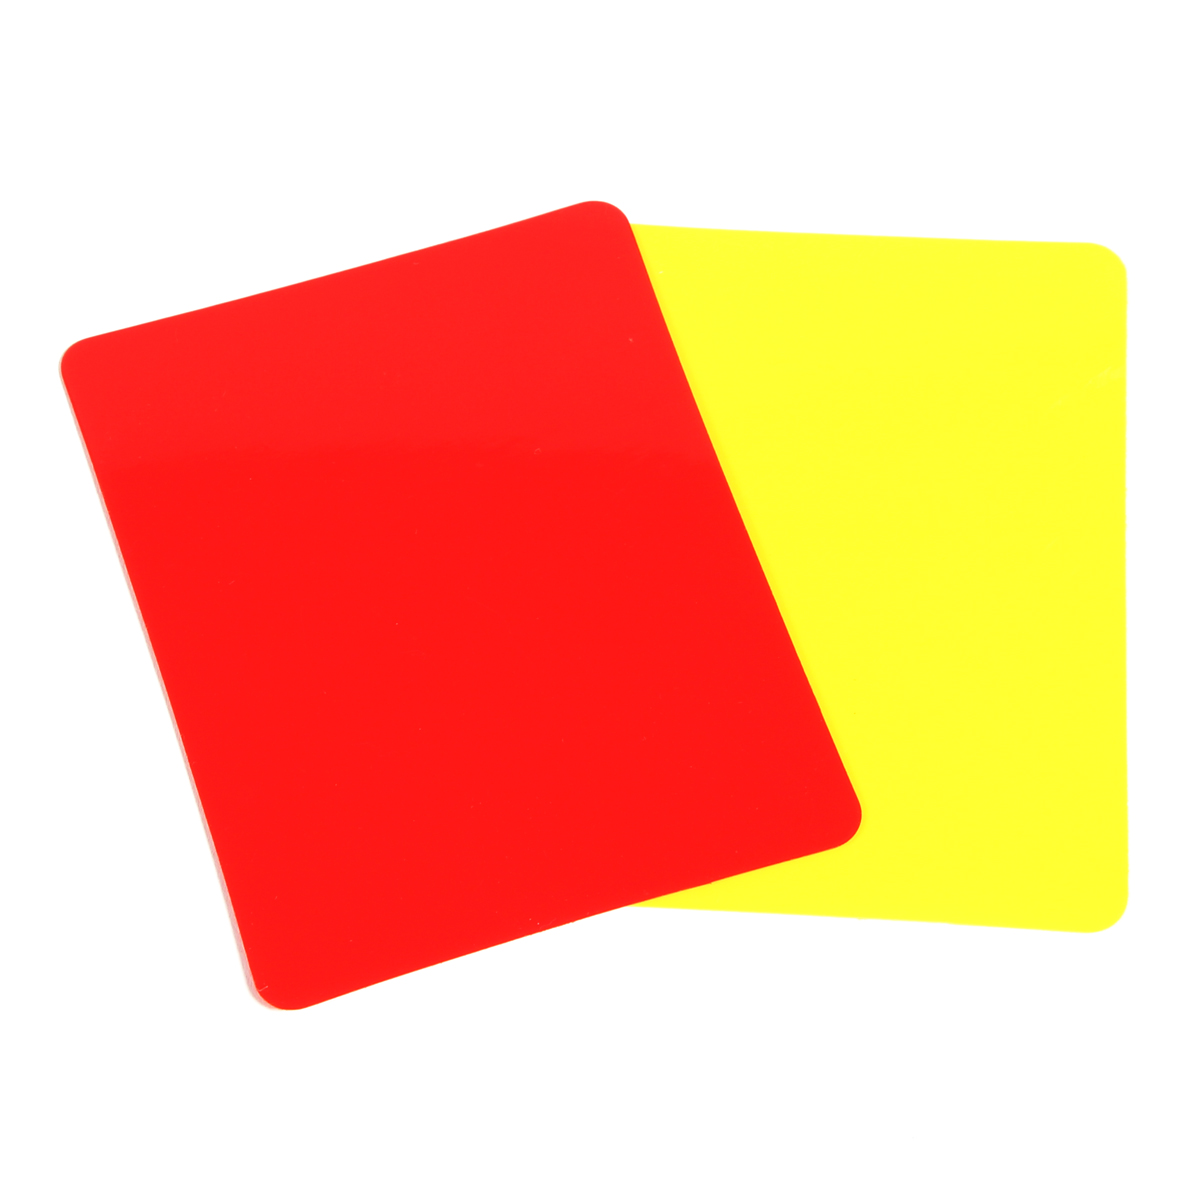 Cartões De Arbitragem Em Pvc (conjunto De 2, 1 Vermelho E 1 Amarelo) - multicolor - 